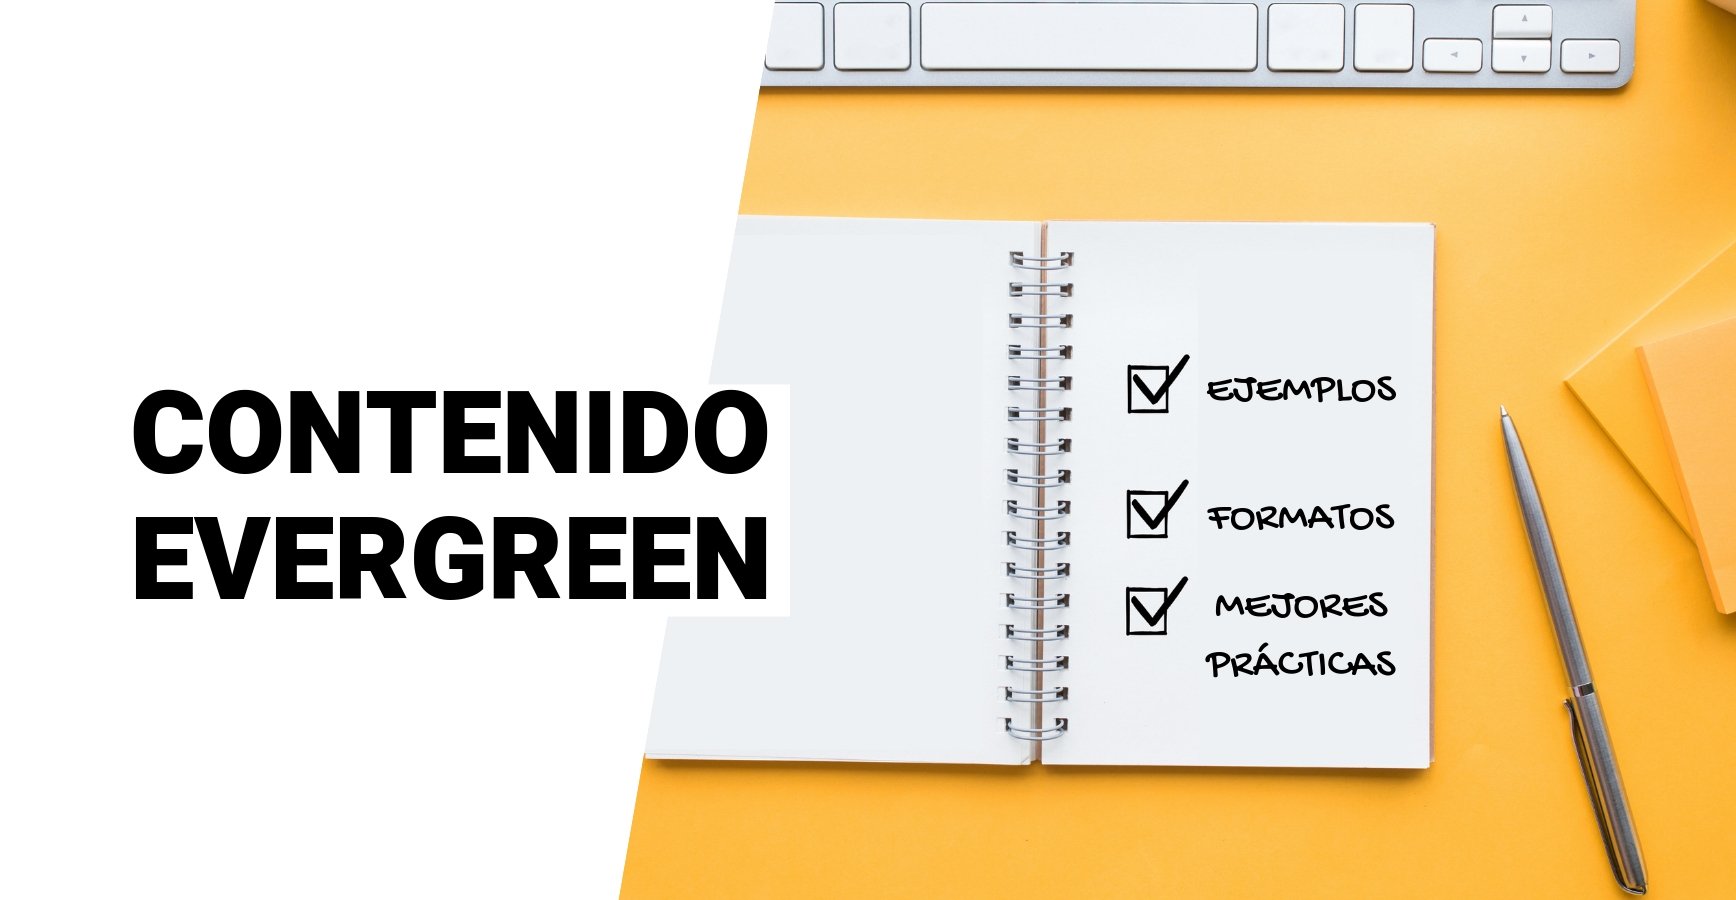 Contenido Evergreen- Que es, ejemplos, formatos y recomendaciones